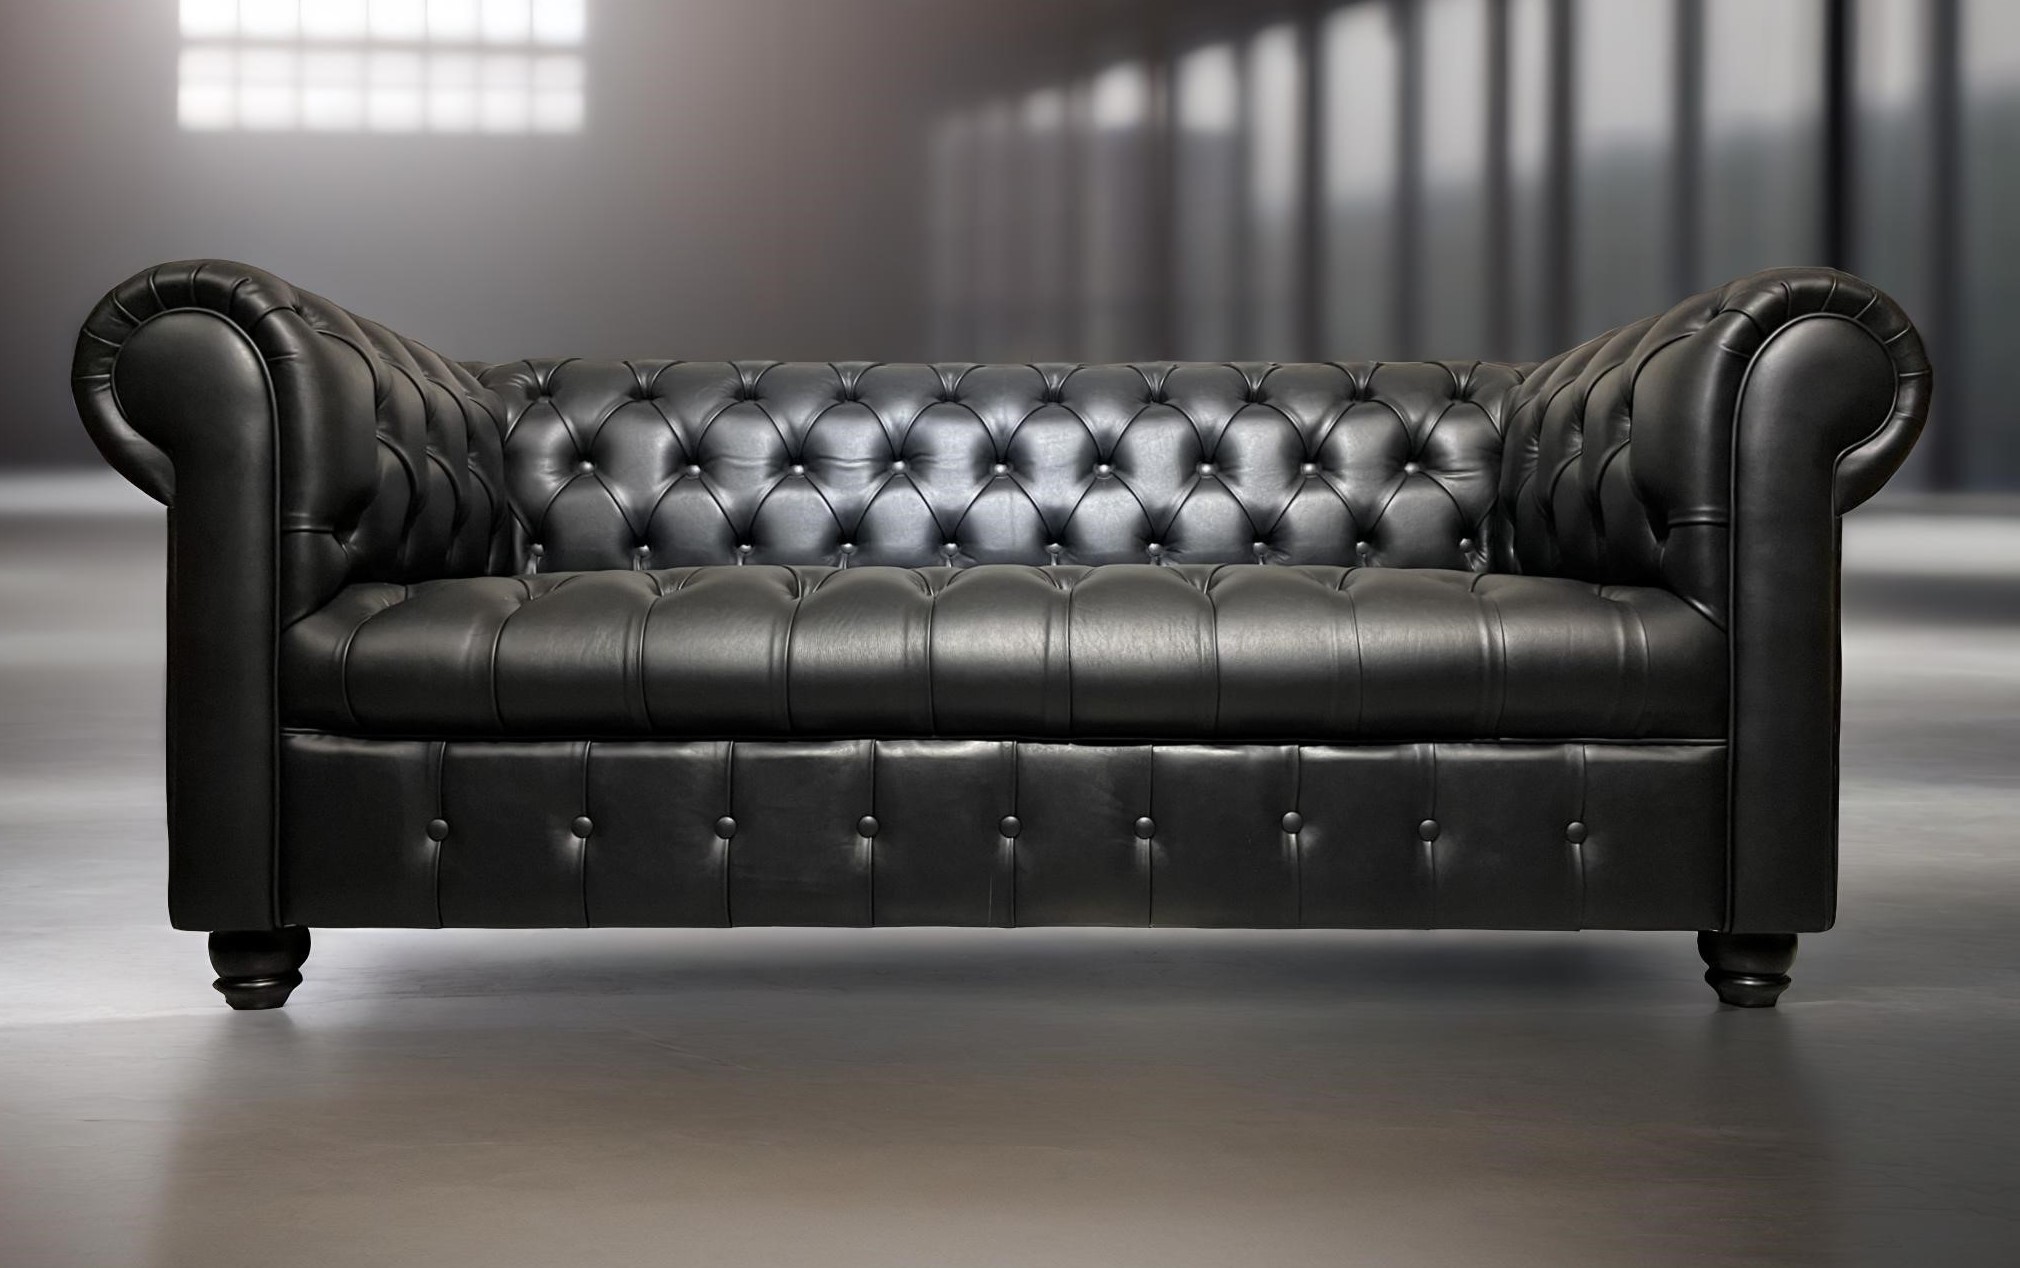 Sofa de Cuero – Chesterfield Color Fargo Negro, Capitoné Ingles, respaldo Recto Clásico, Cuero 100% Natural Uruguayo